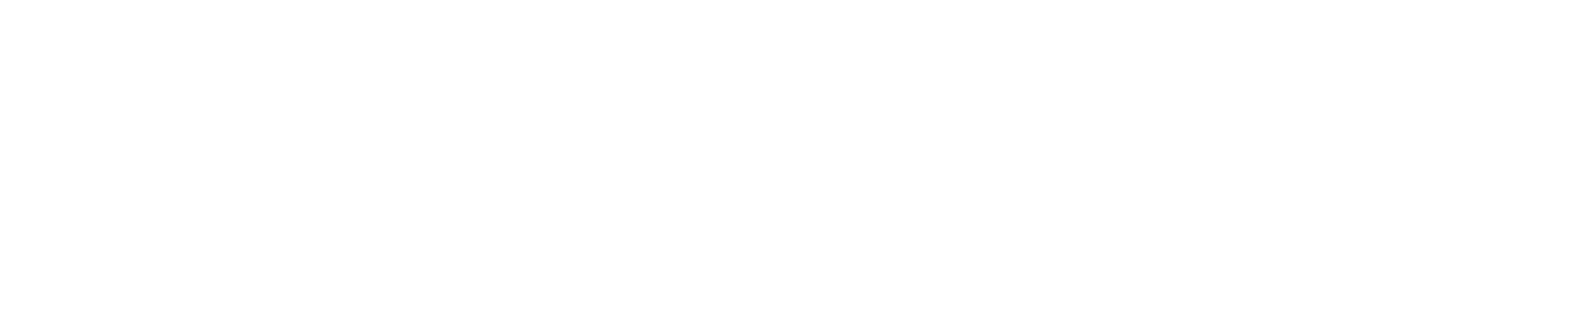 Aboitiz Power Logo groß für dunkle Hintergründe (transparentes PNG)